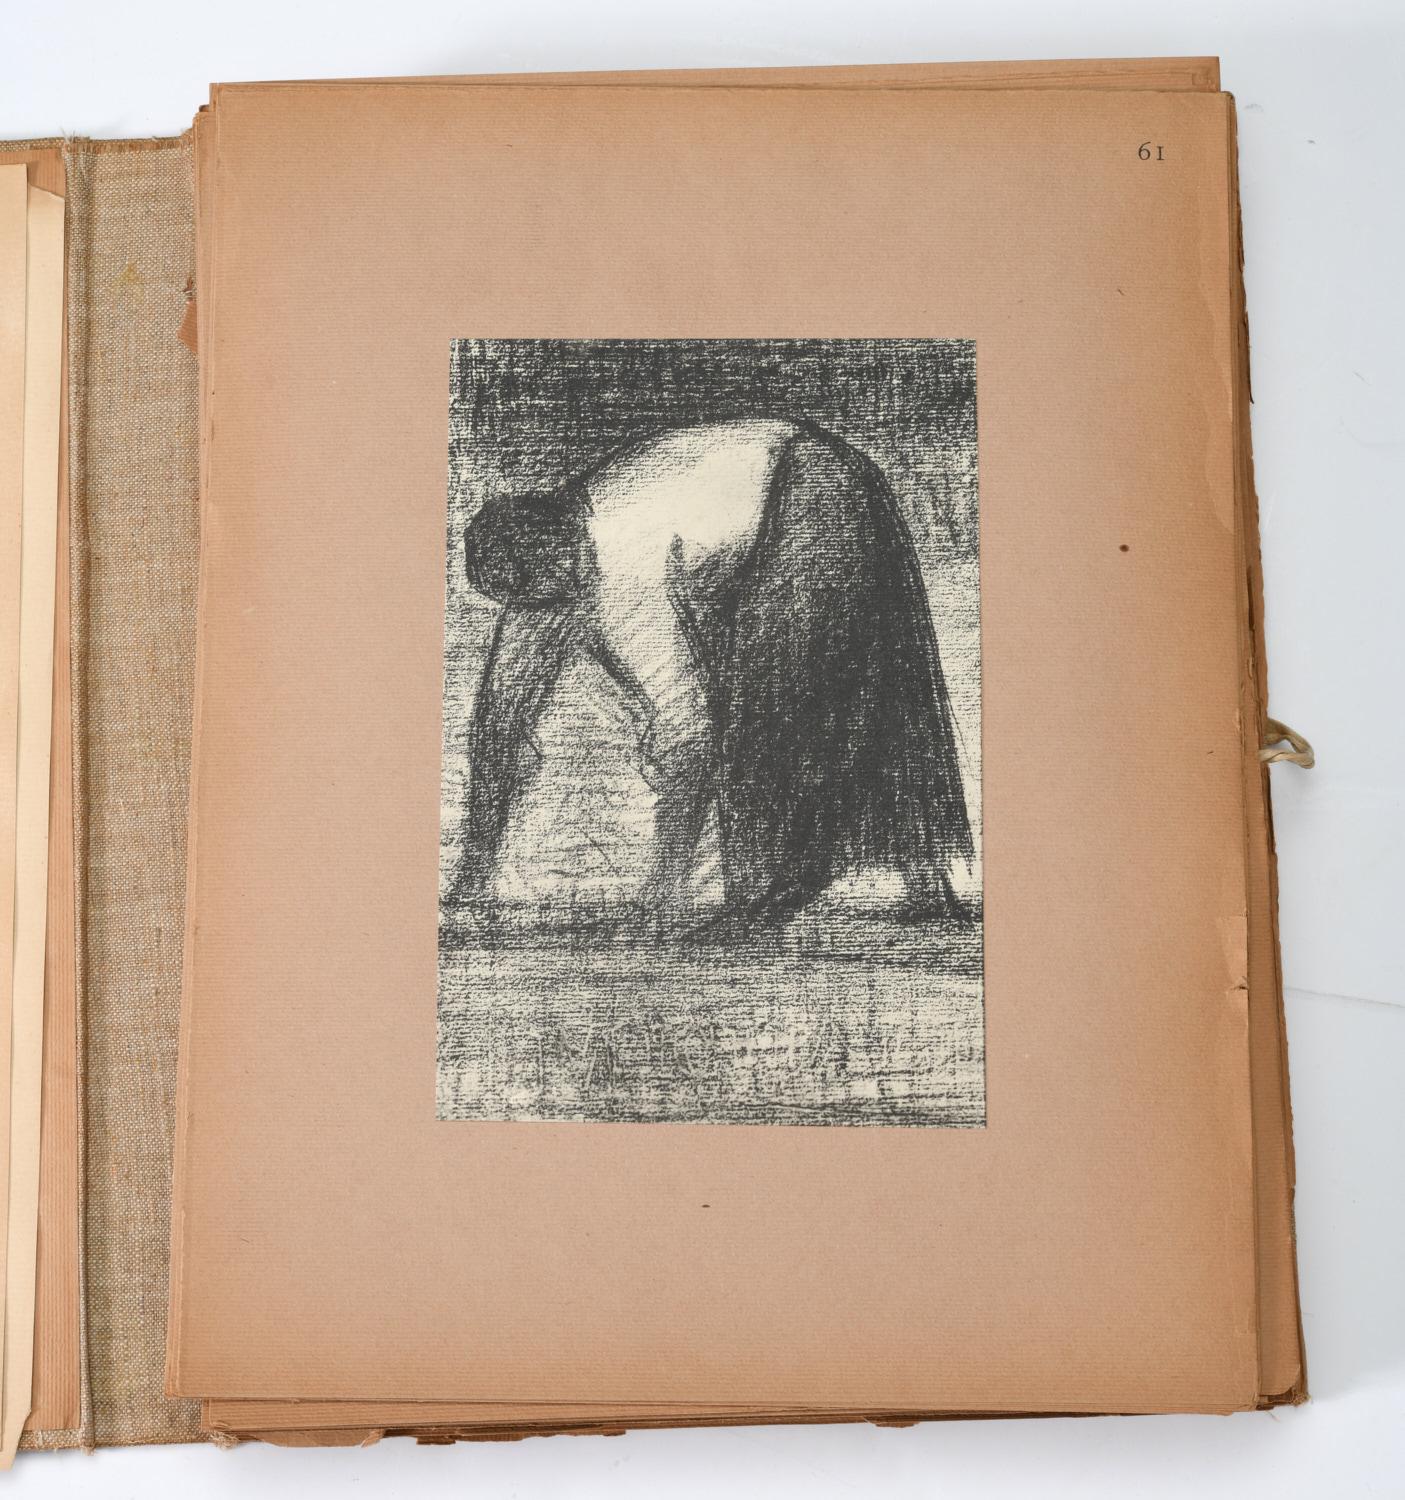 French Les Dessins De Georges Seurat, 1859-1891, Complete Folio of 67 Images